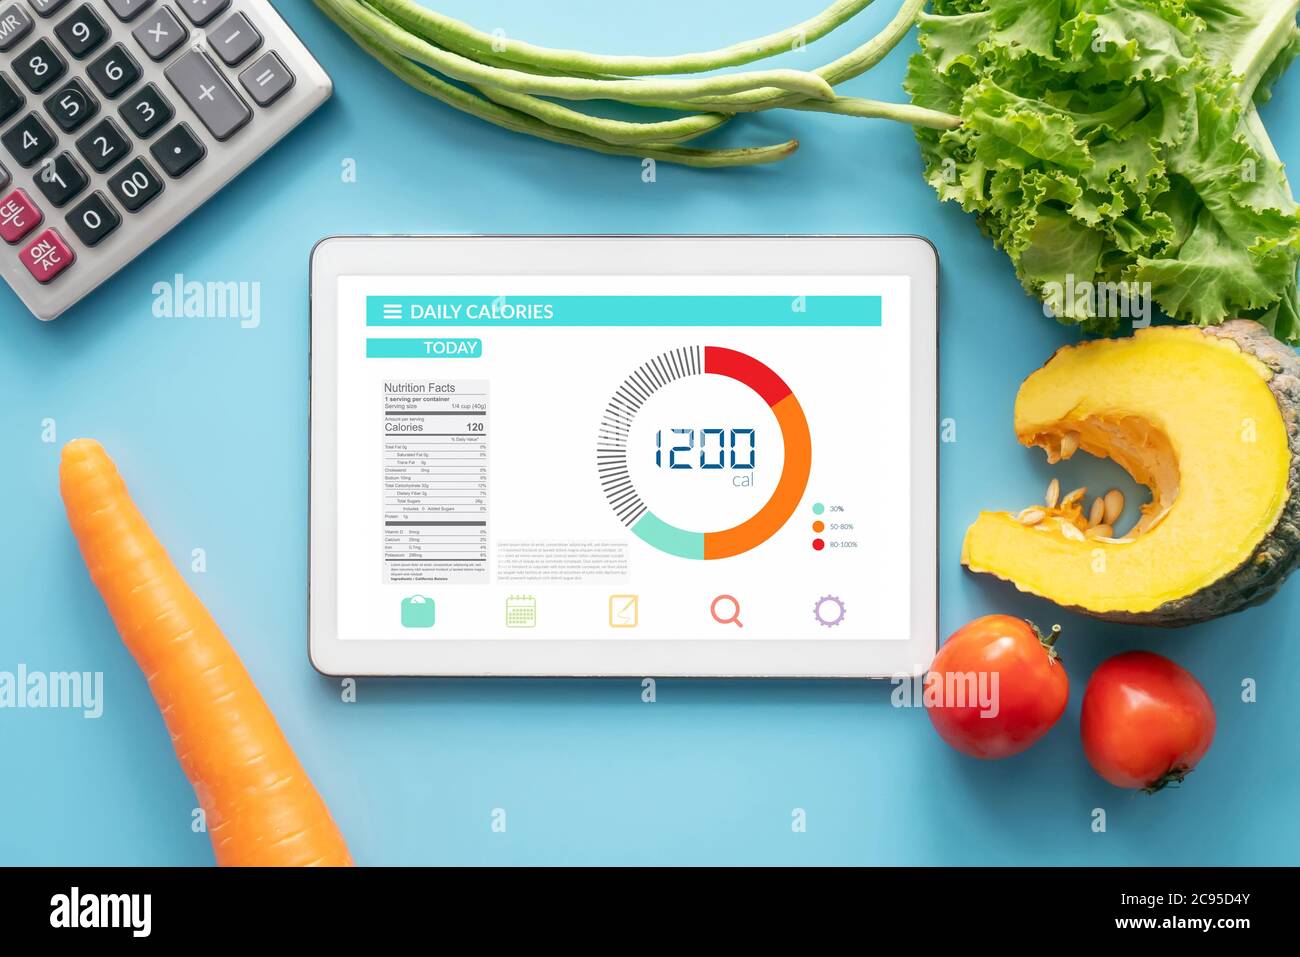 Idée de comptage des calories , régime alimentaire , contrôle alimentaire et perte de poids. Tablette avec application de compteur de calories à l'écran à la table de salle à manger avec légumes Banque D'Images